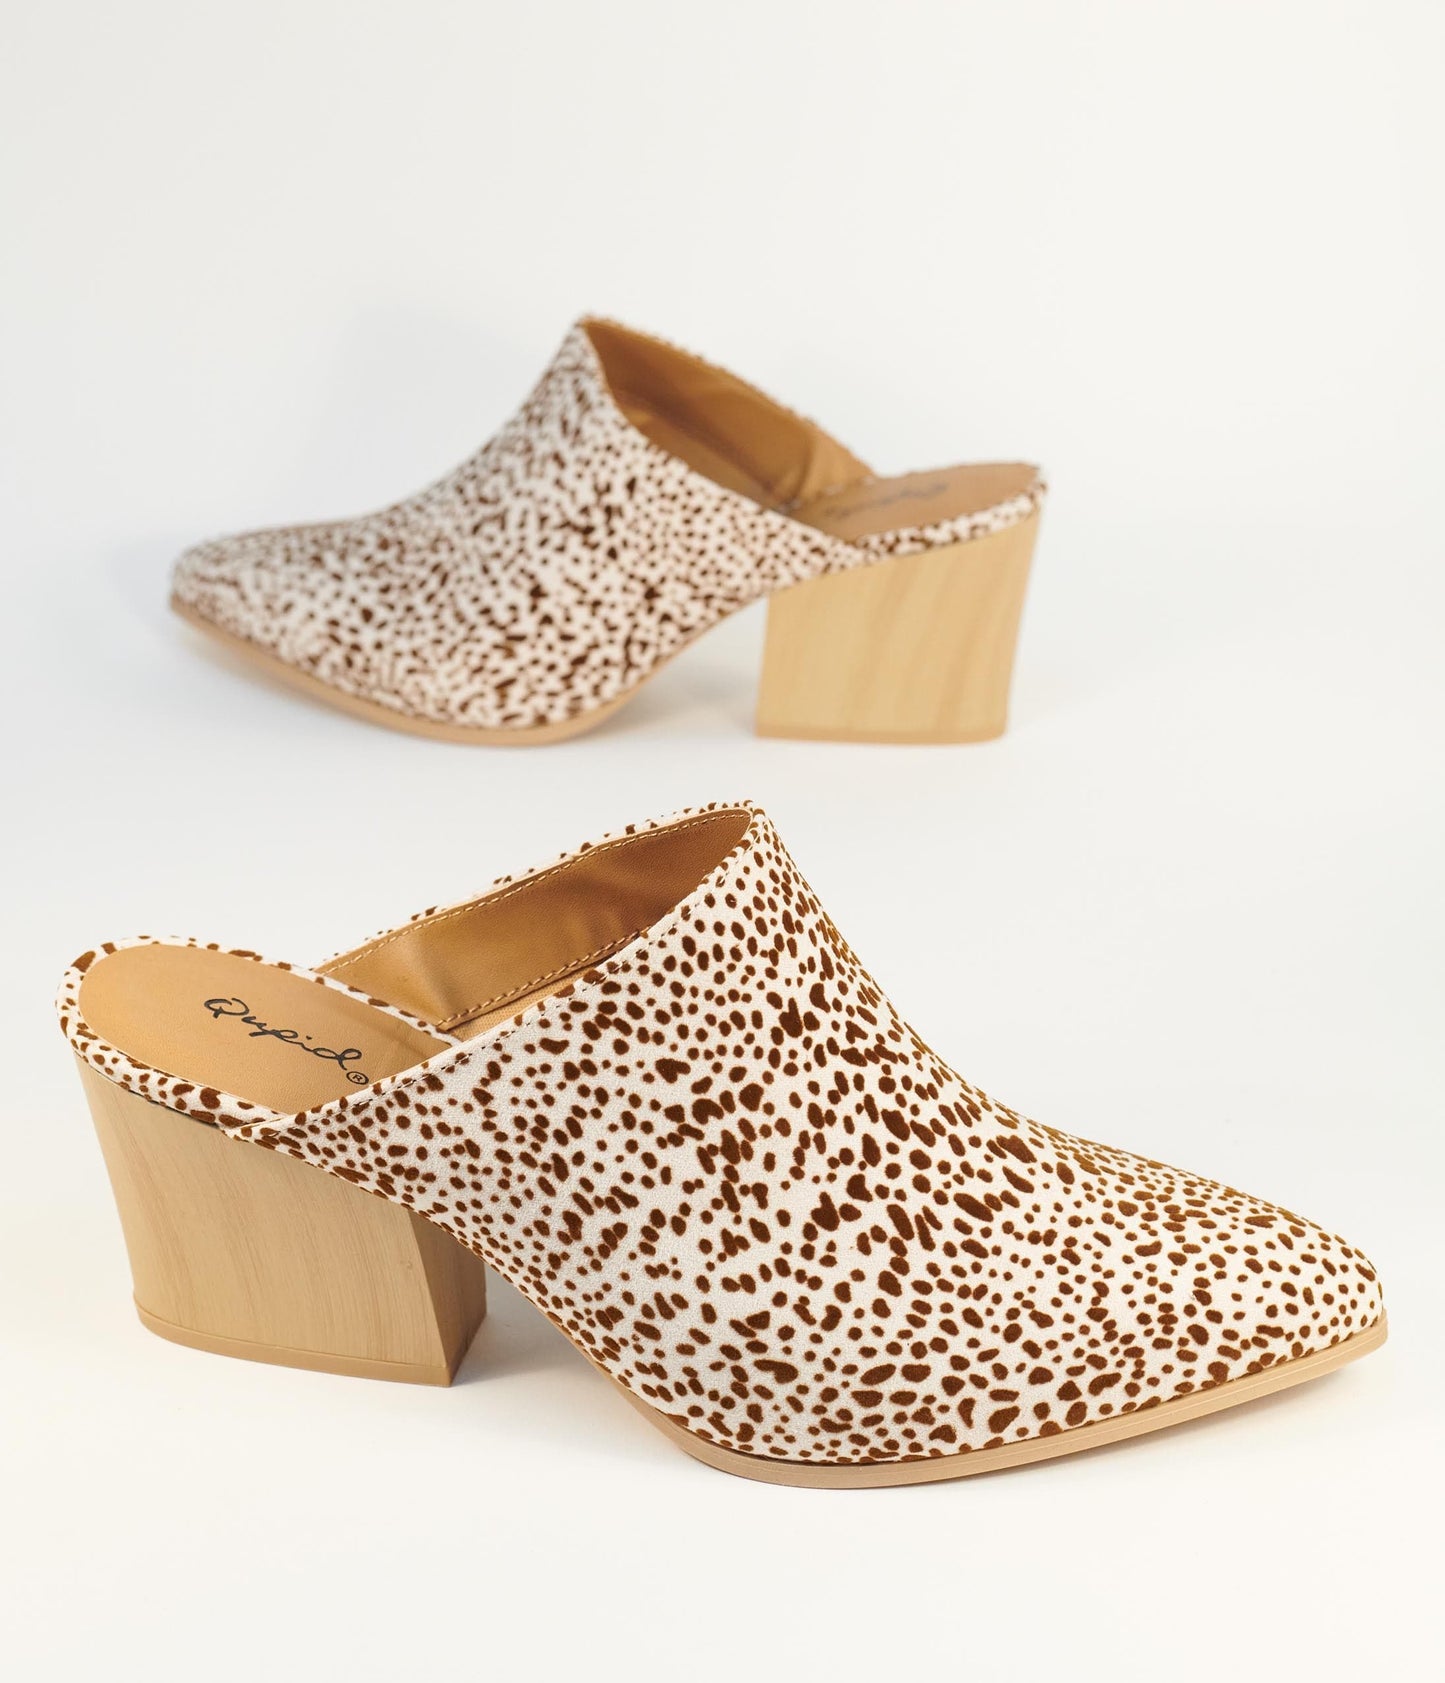 Cream & Brown Cheetah Suede Mule Heels